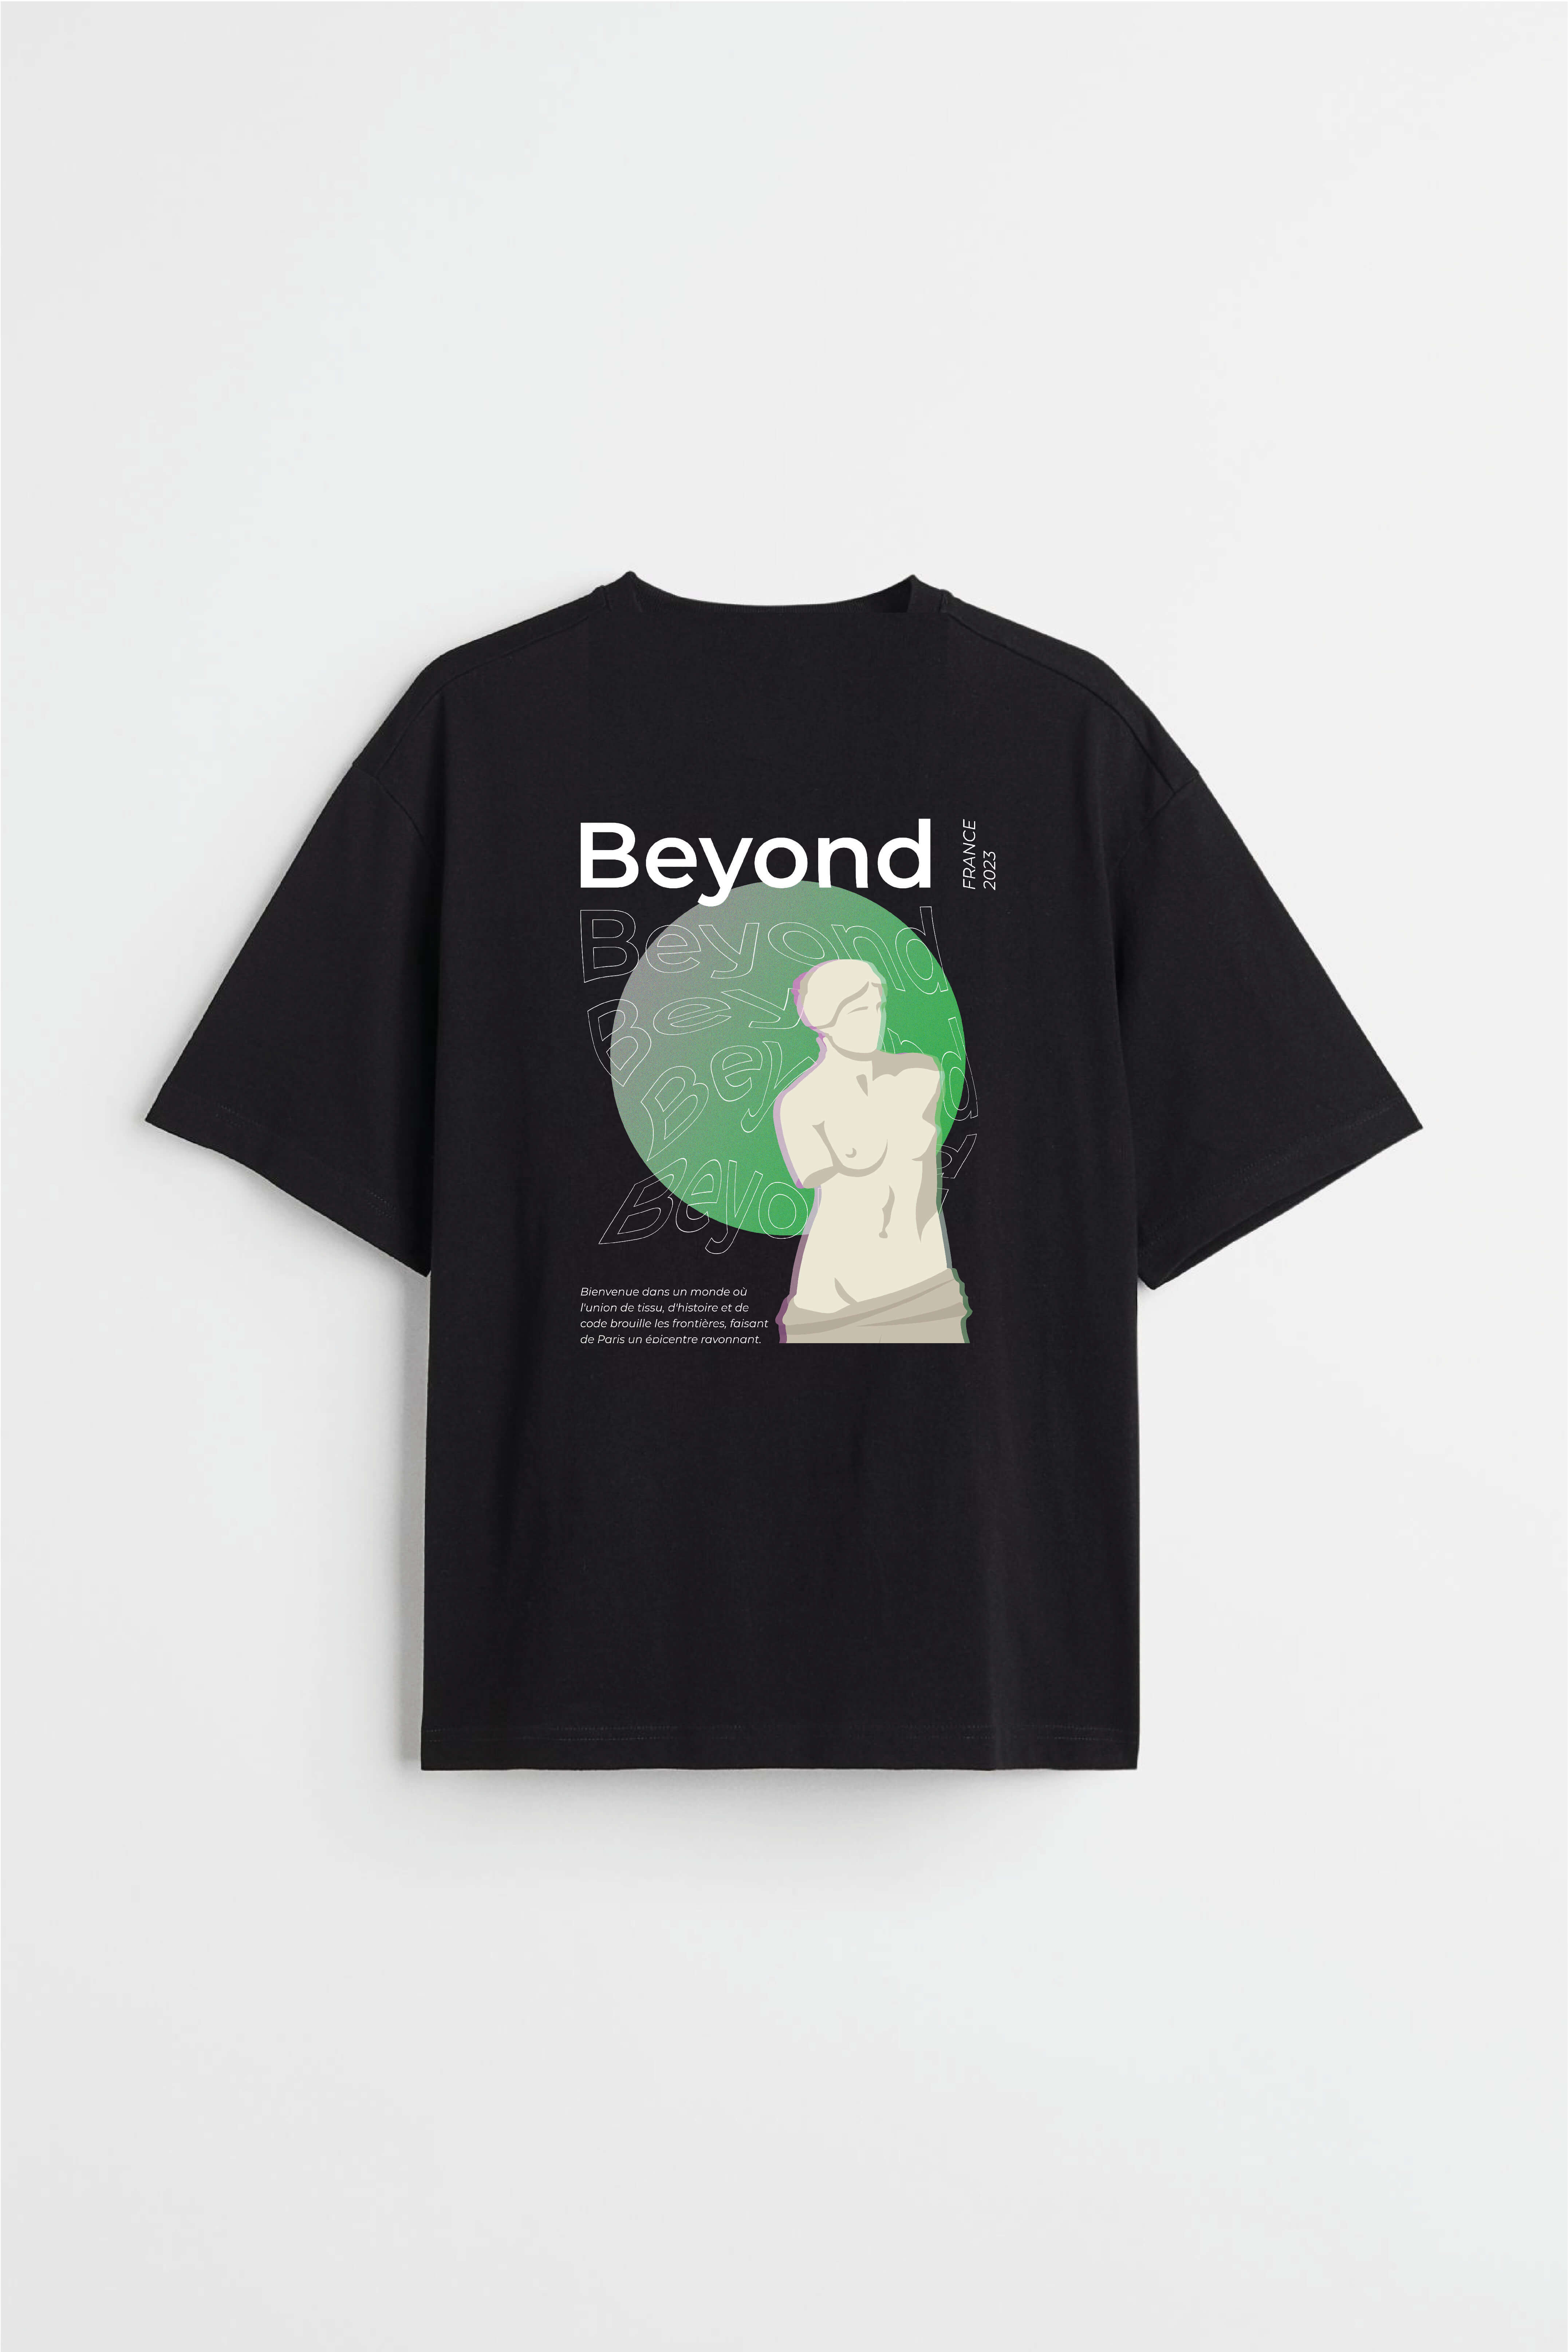 Schwarzes T-Shirt, darauf: Schriftzug „Beyond“, grüner Kreis und Pariser Venus-Skulptur bilden ein „Q“.